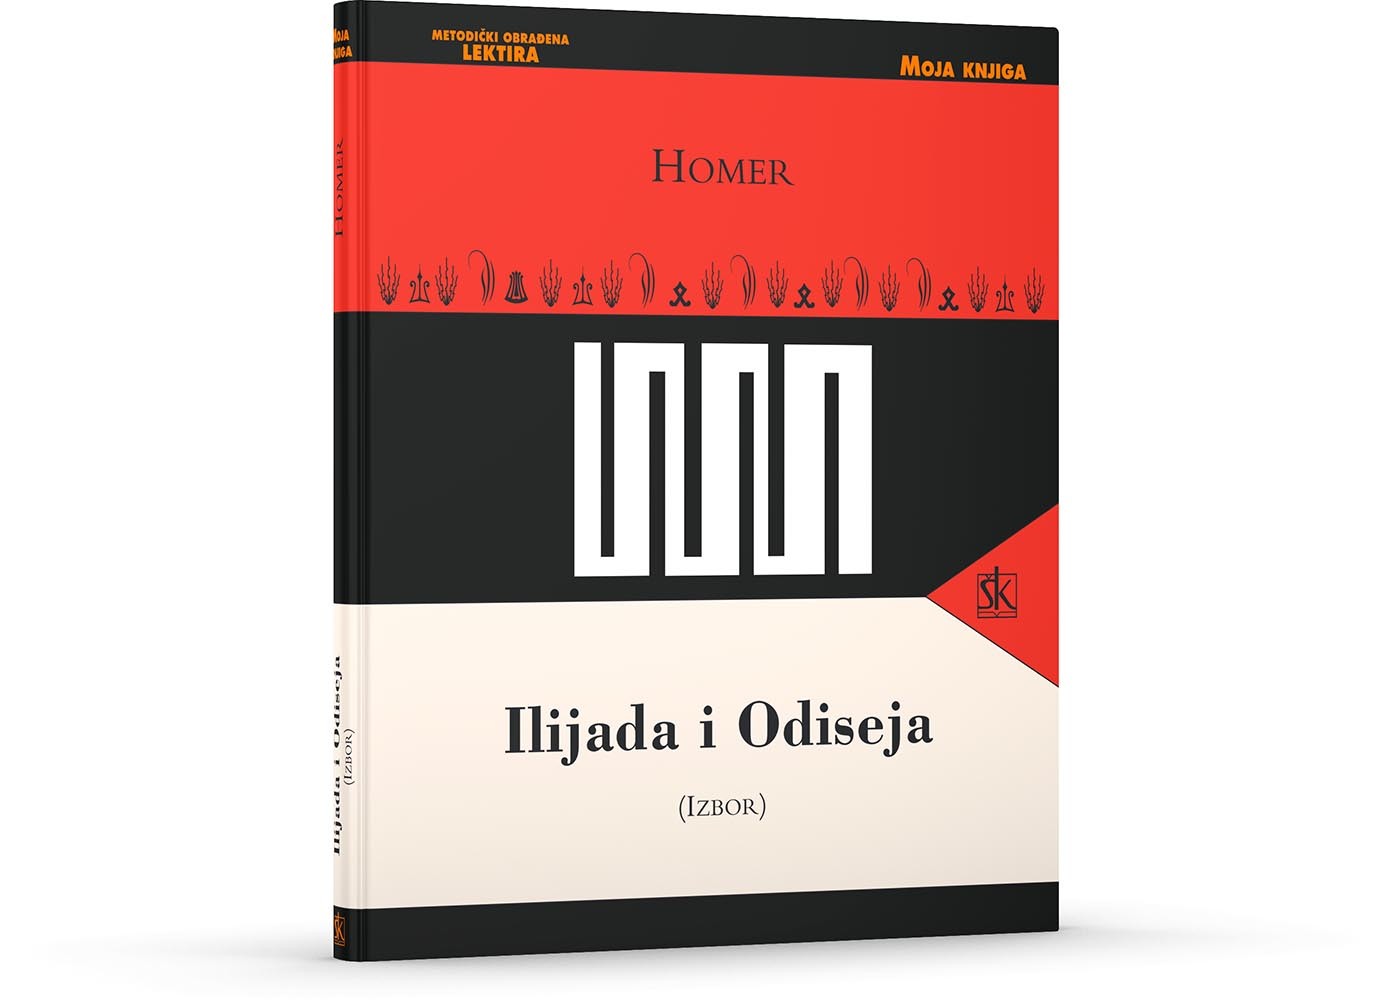 Ilijada i odiseja knjiga pdf